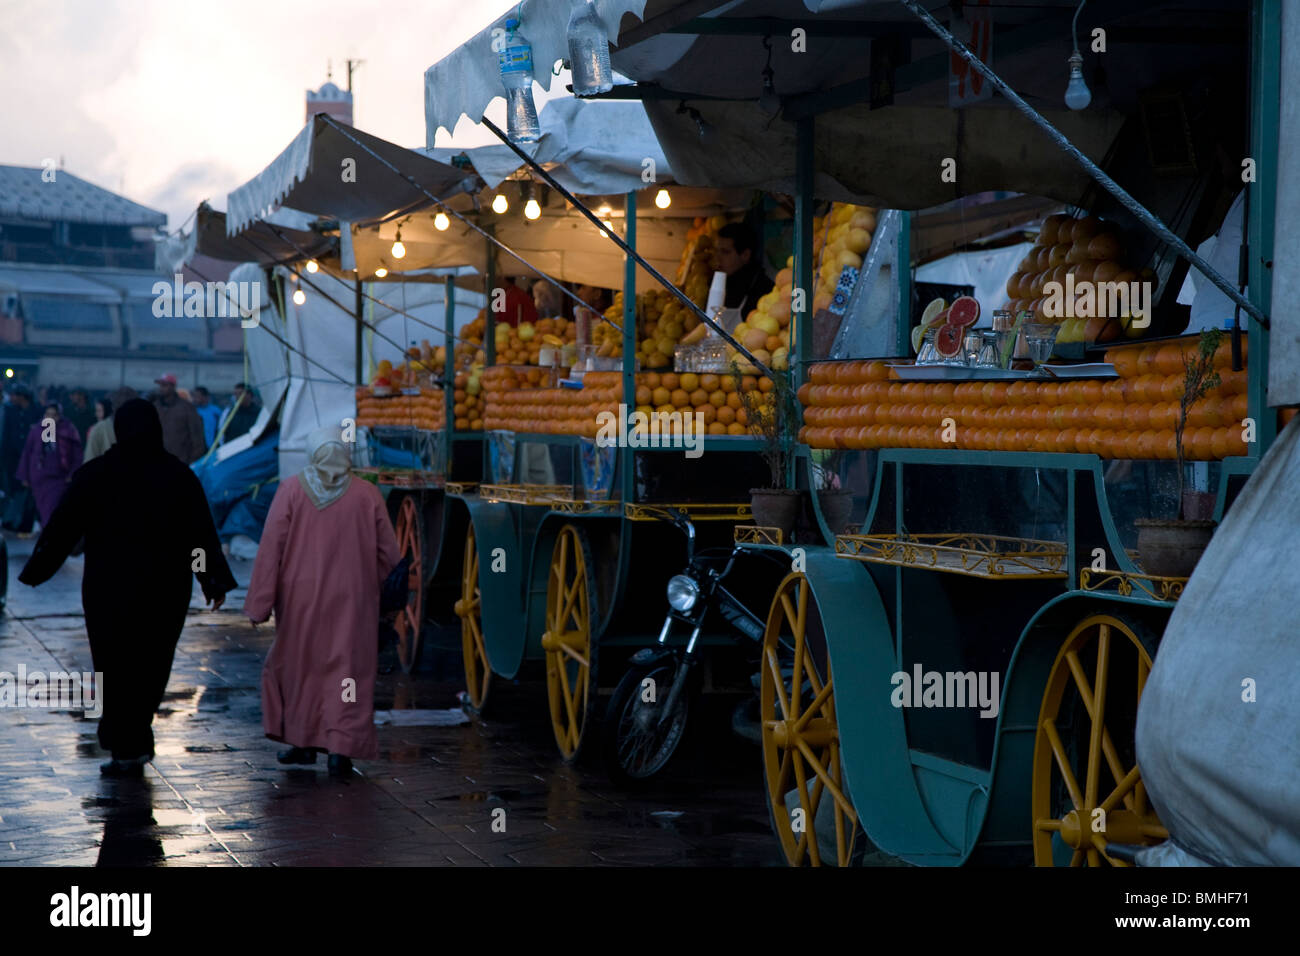 Die Imbissbuden von Djemaa El Fna, Marrakesch, Marokko wichtigsten öffentlichen Platz verkaufen orange Saft, Muttern, Schnecken und traditionelle Speisen. Stockfoto